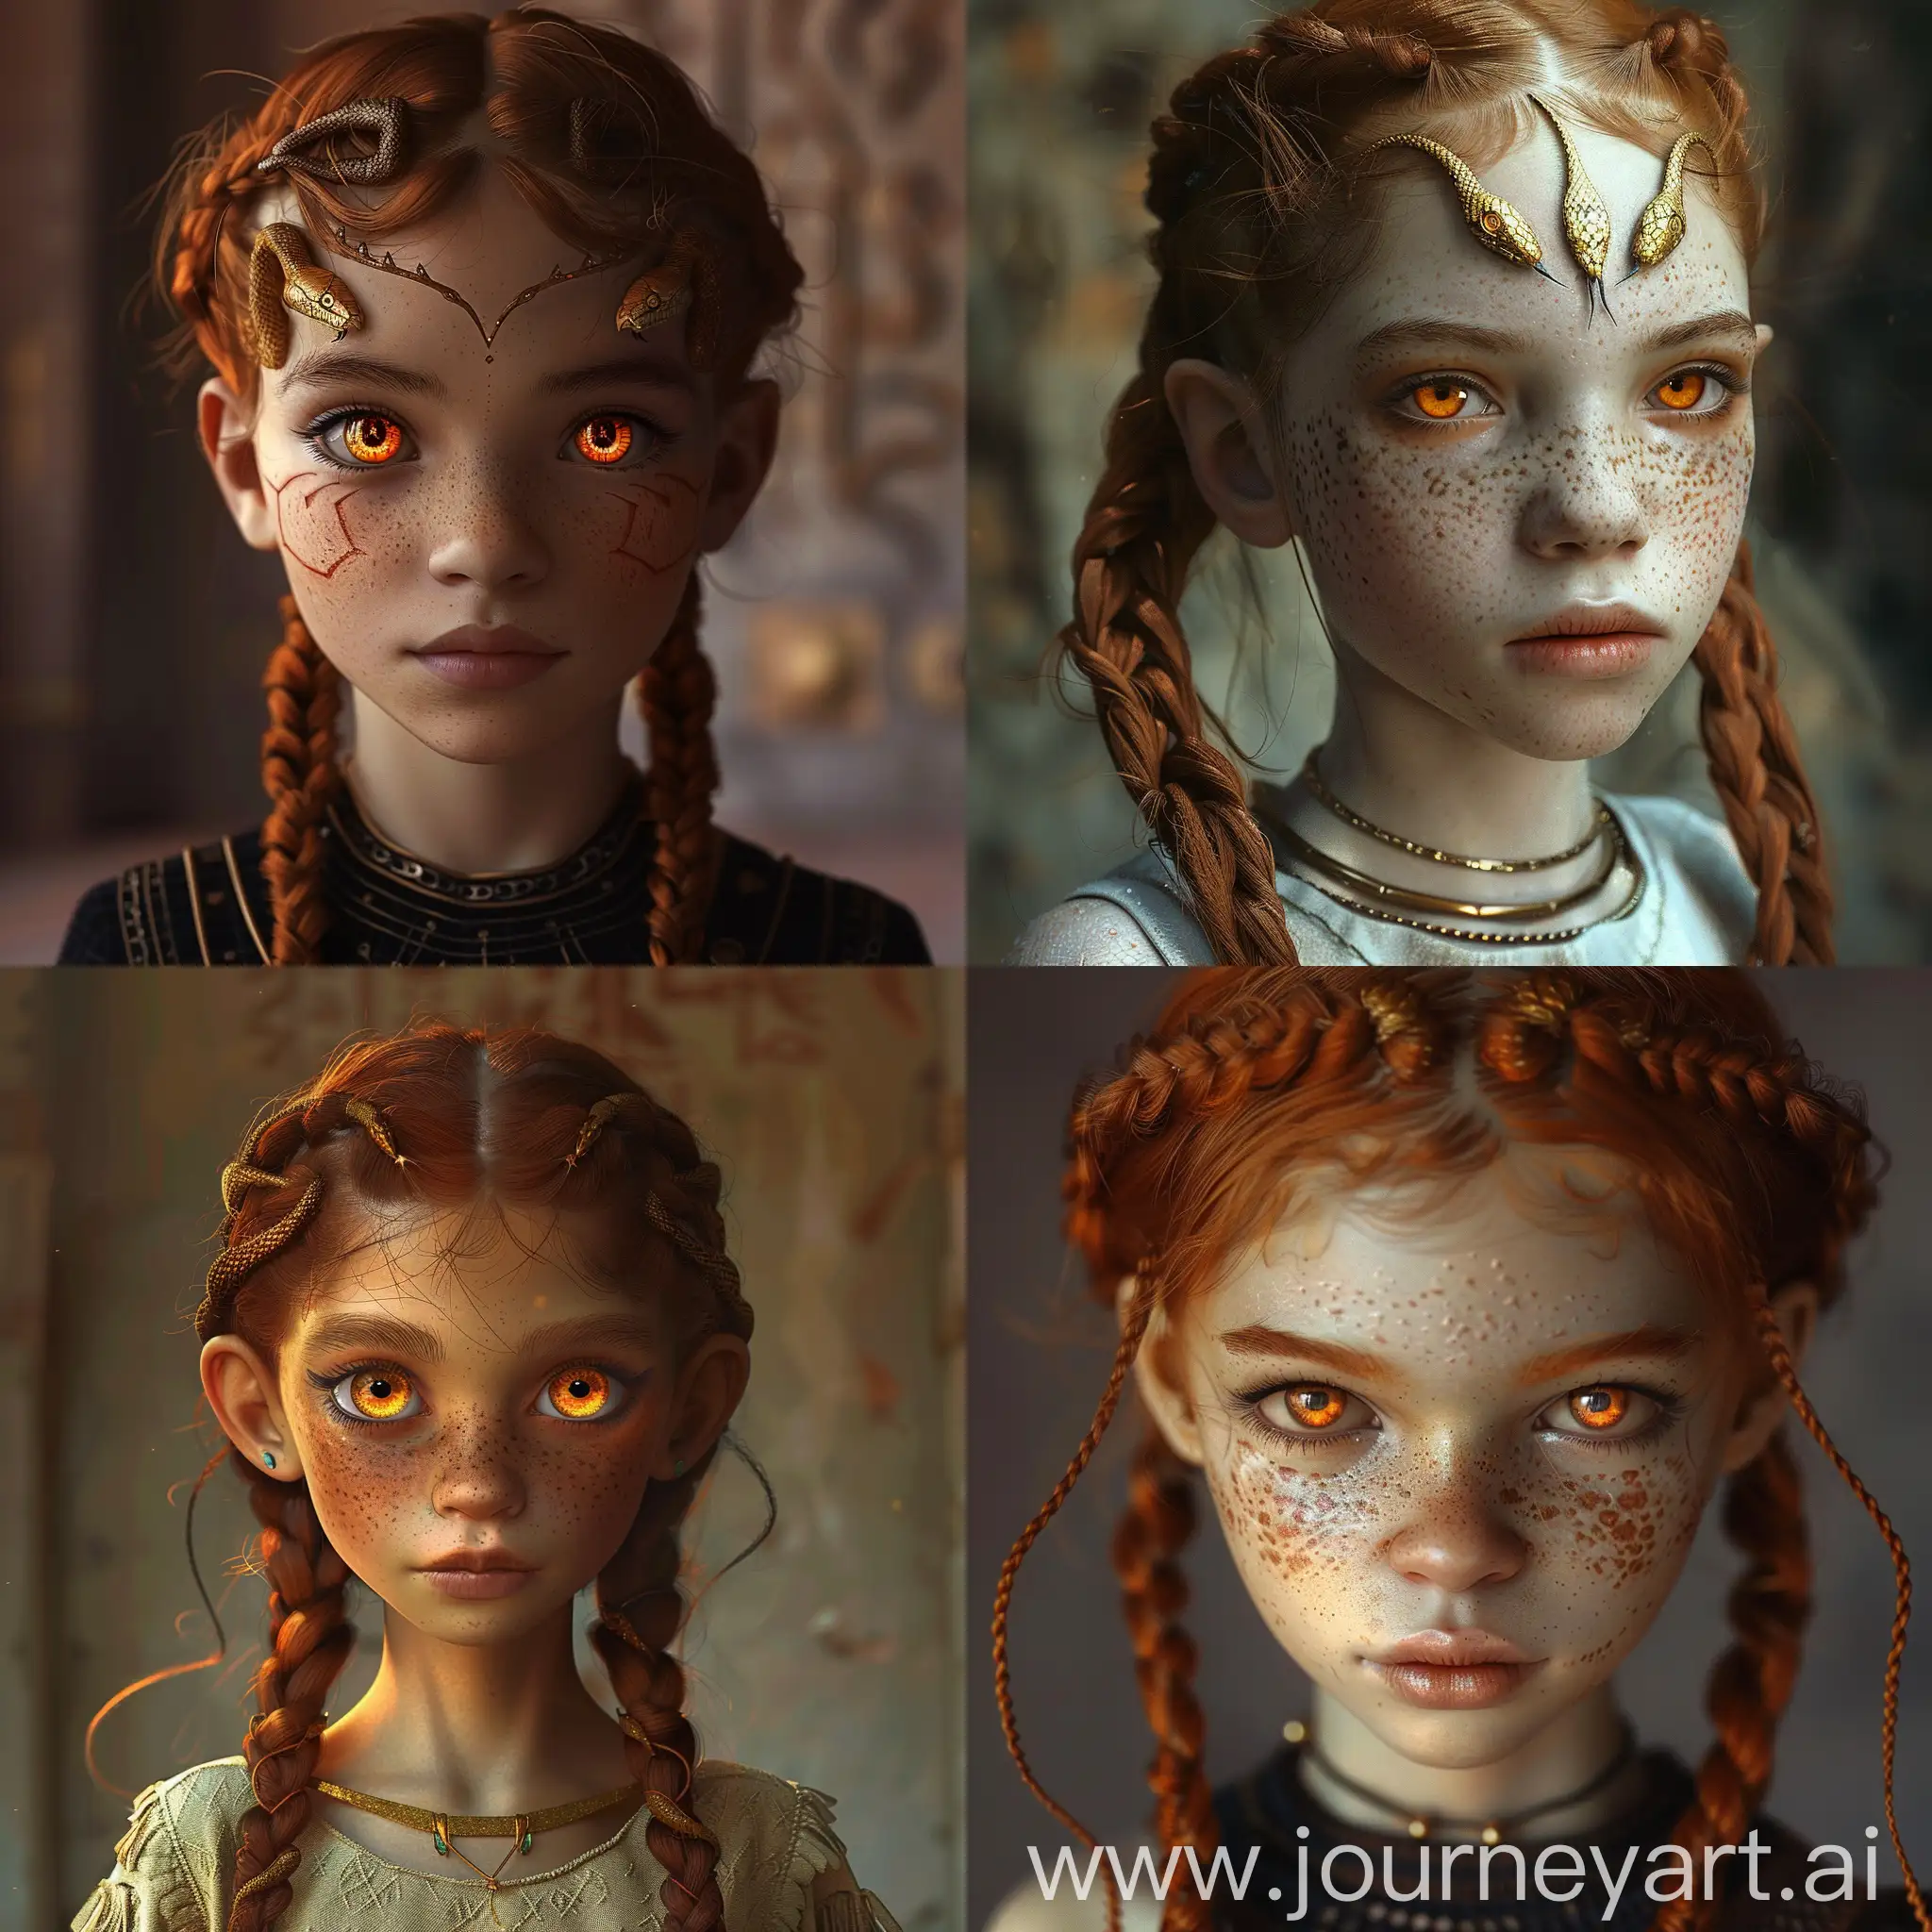 EgyptianInspired-Girl-with-Amber-Snakelike-Eyes-in-Dark-Fantasy-World